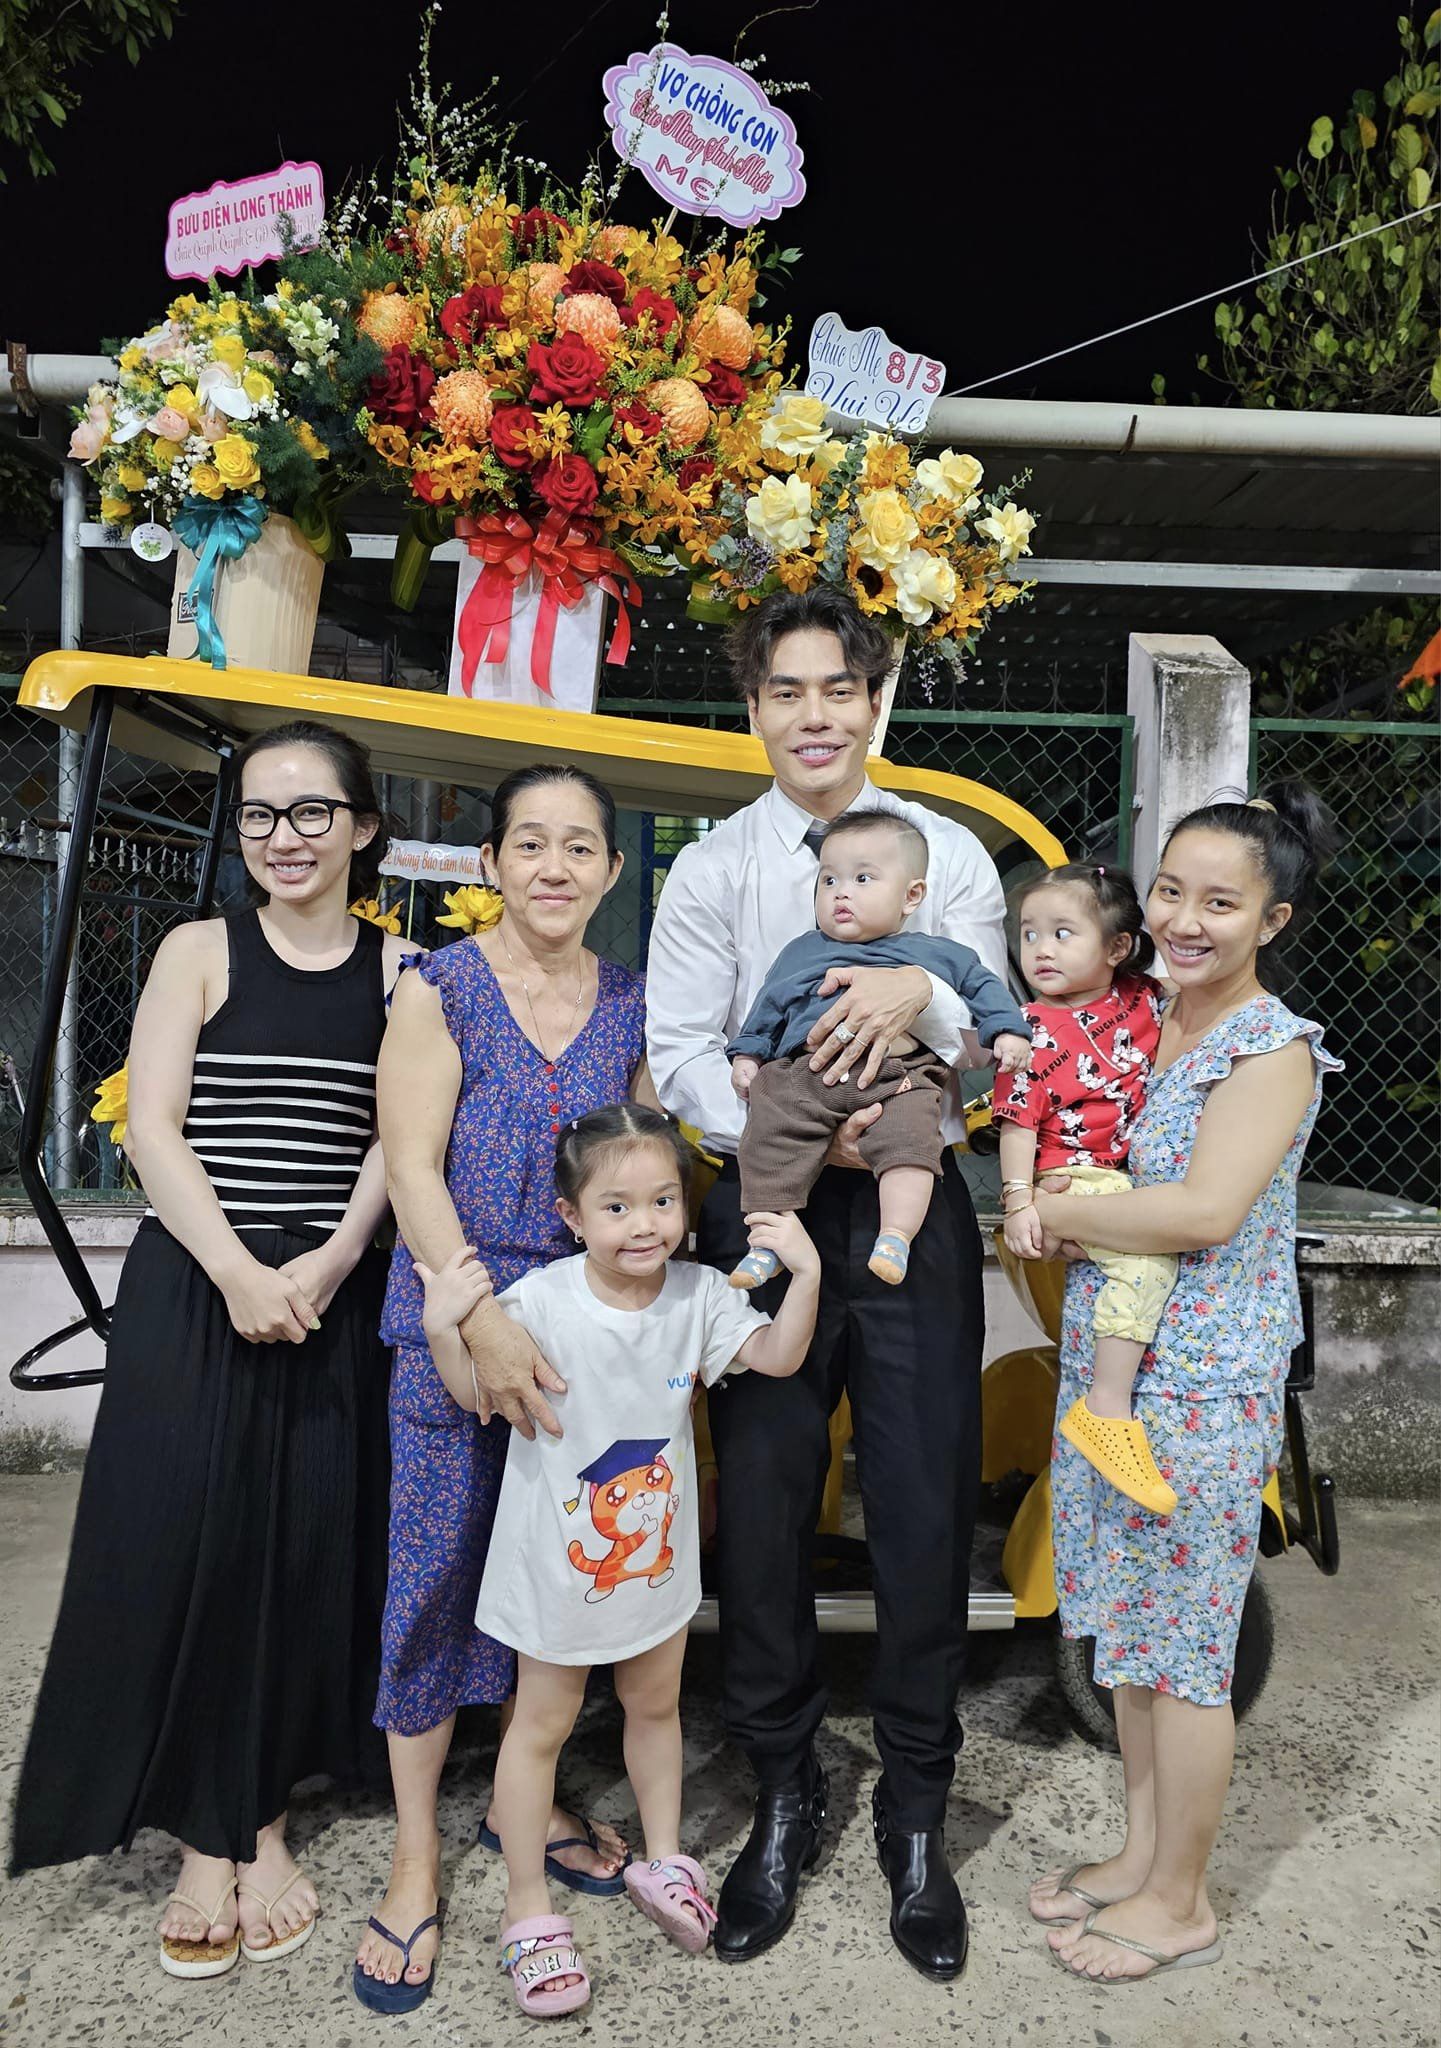 Lê Dương Bảo Lâm chuẩn bị quà cáp hoành tráng cho những người phụ nữ trong gia đình nhân ngày 8/3.